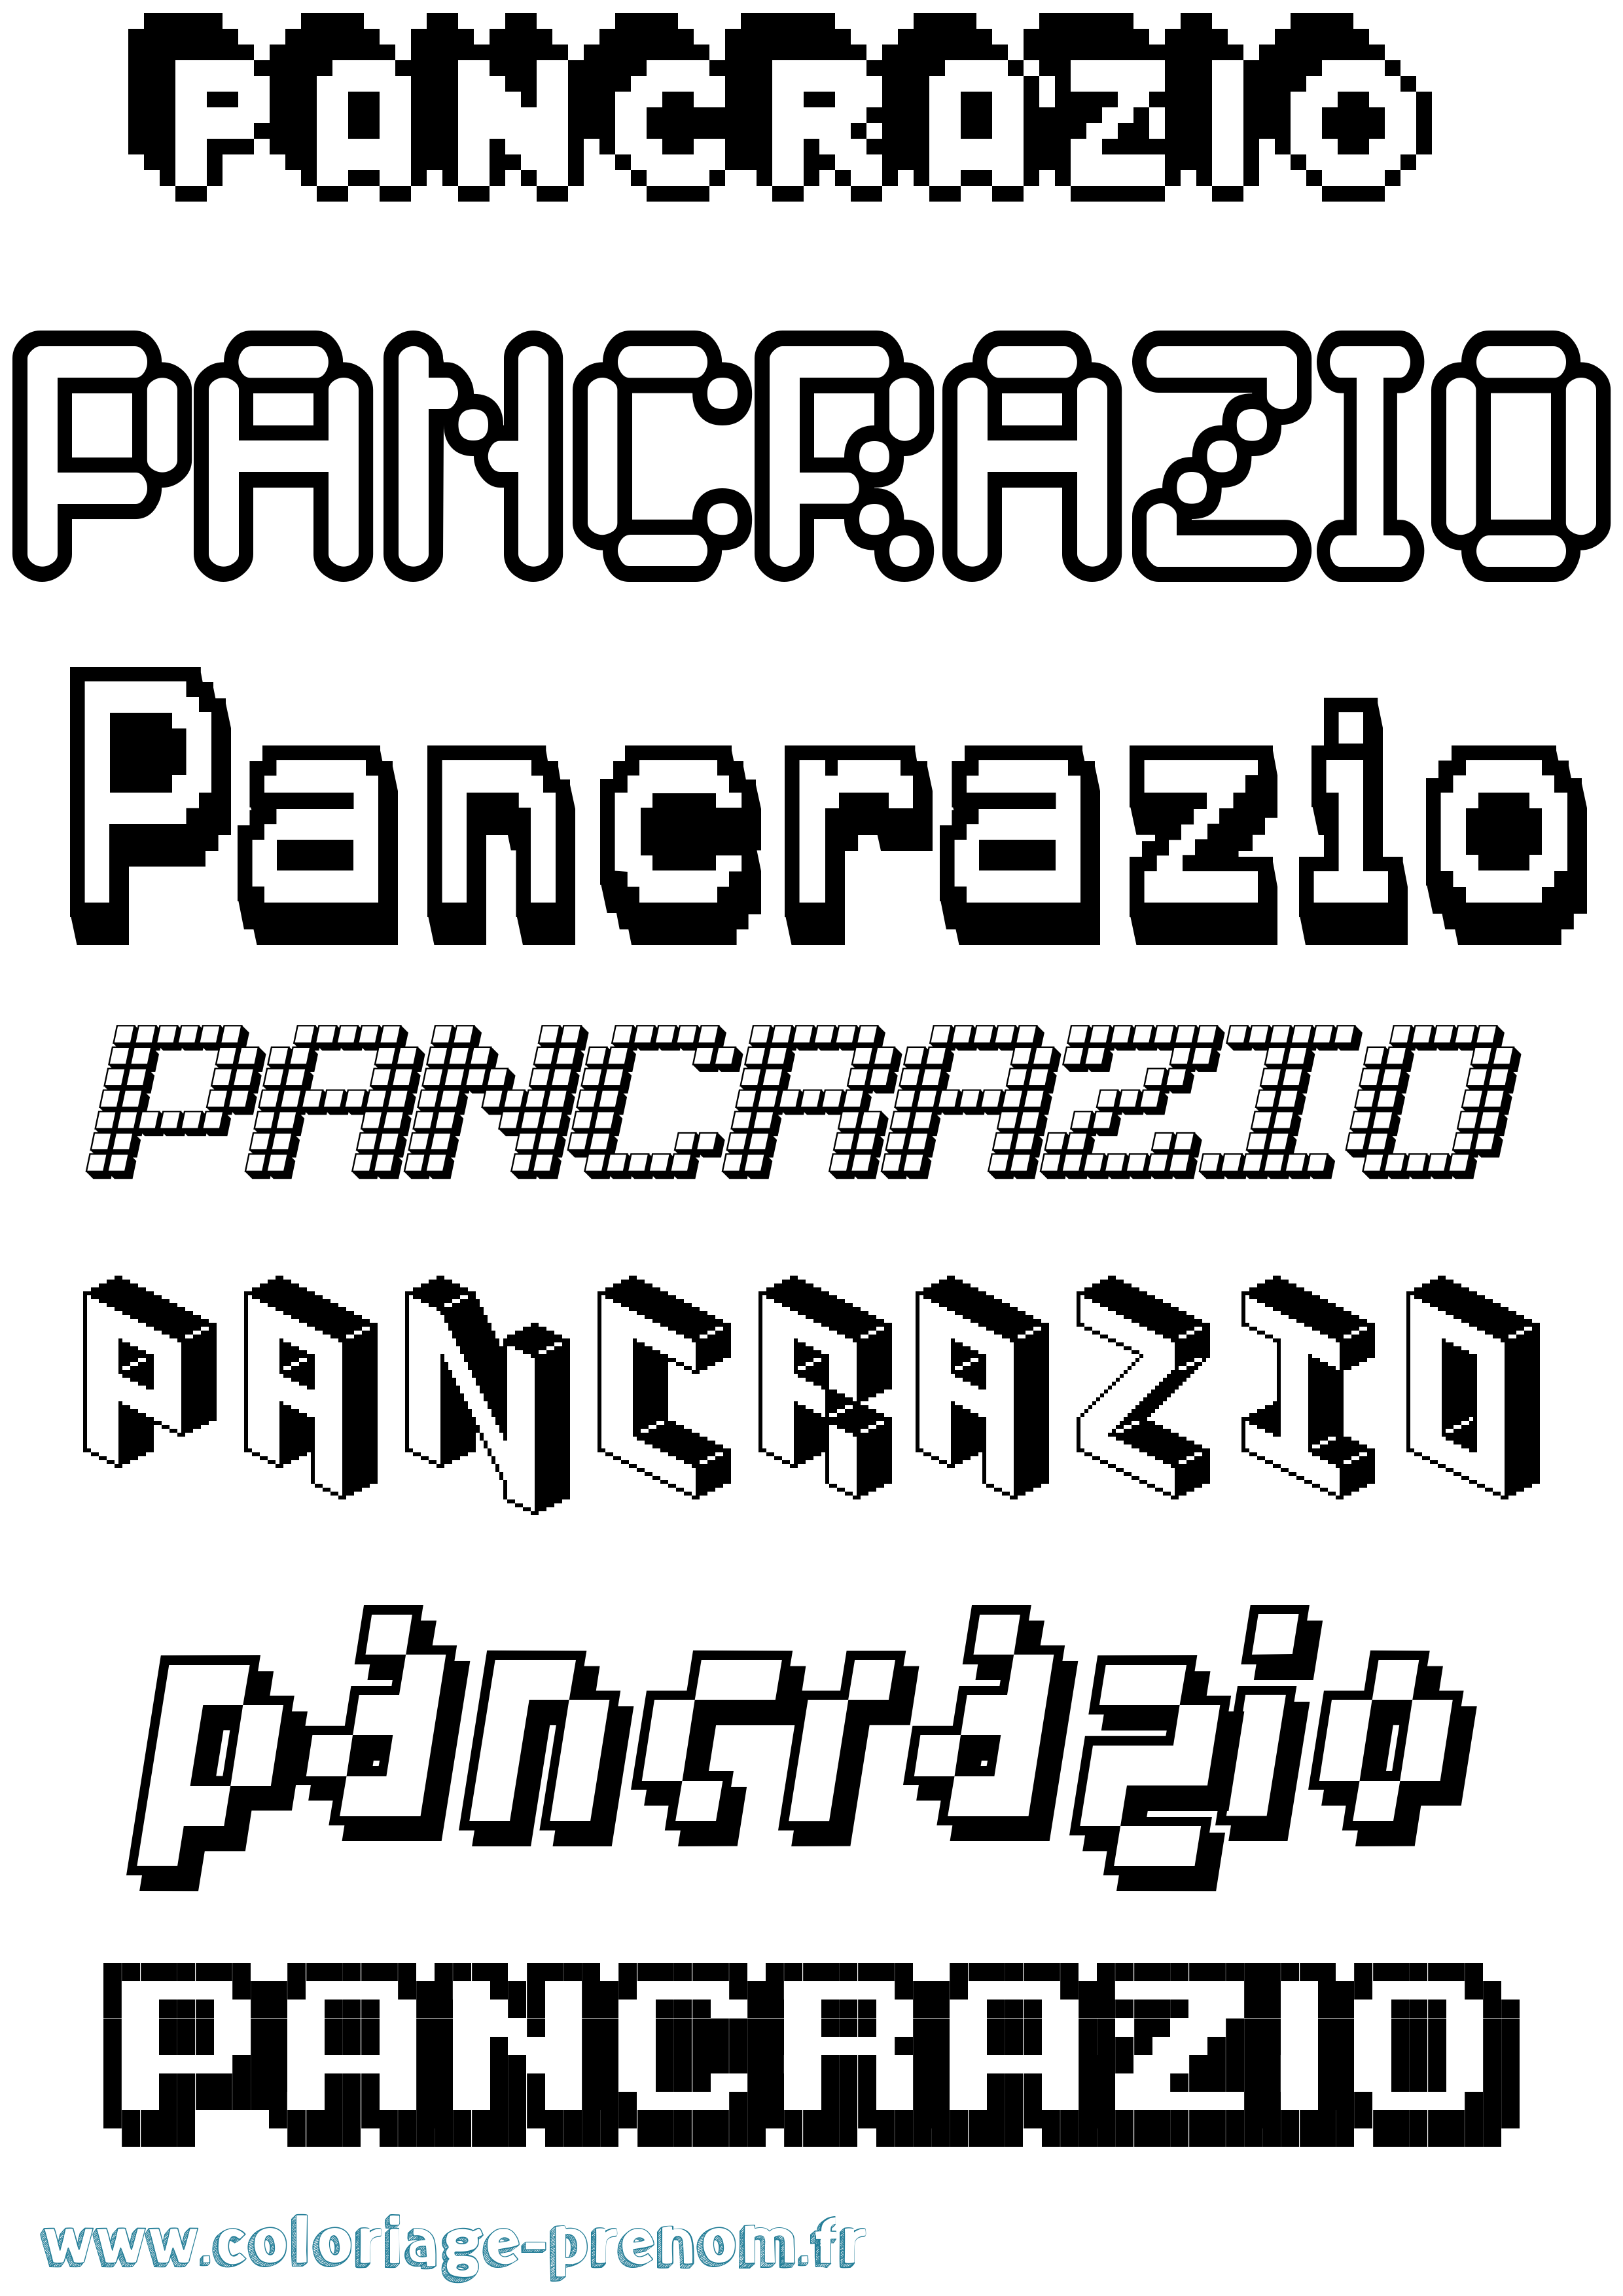 Coloriage prénom Pancrazio Pixel